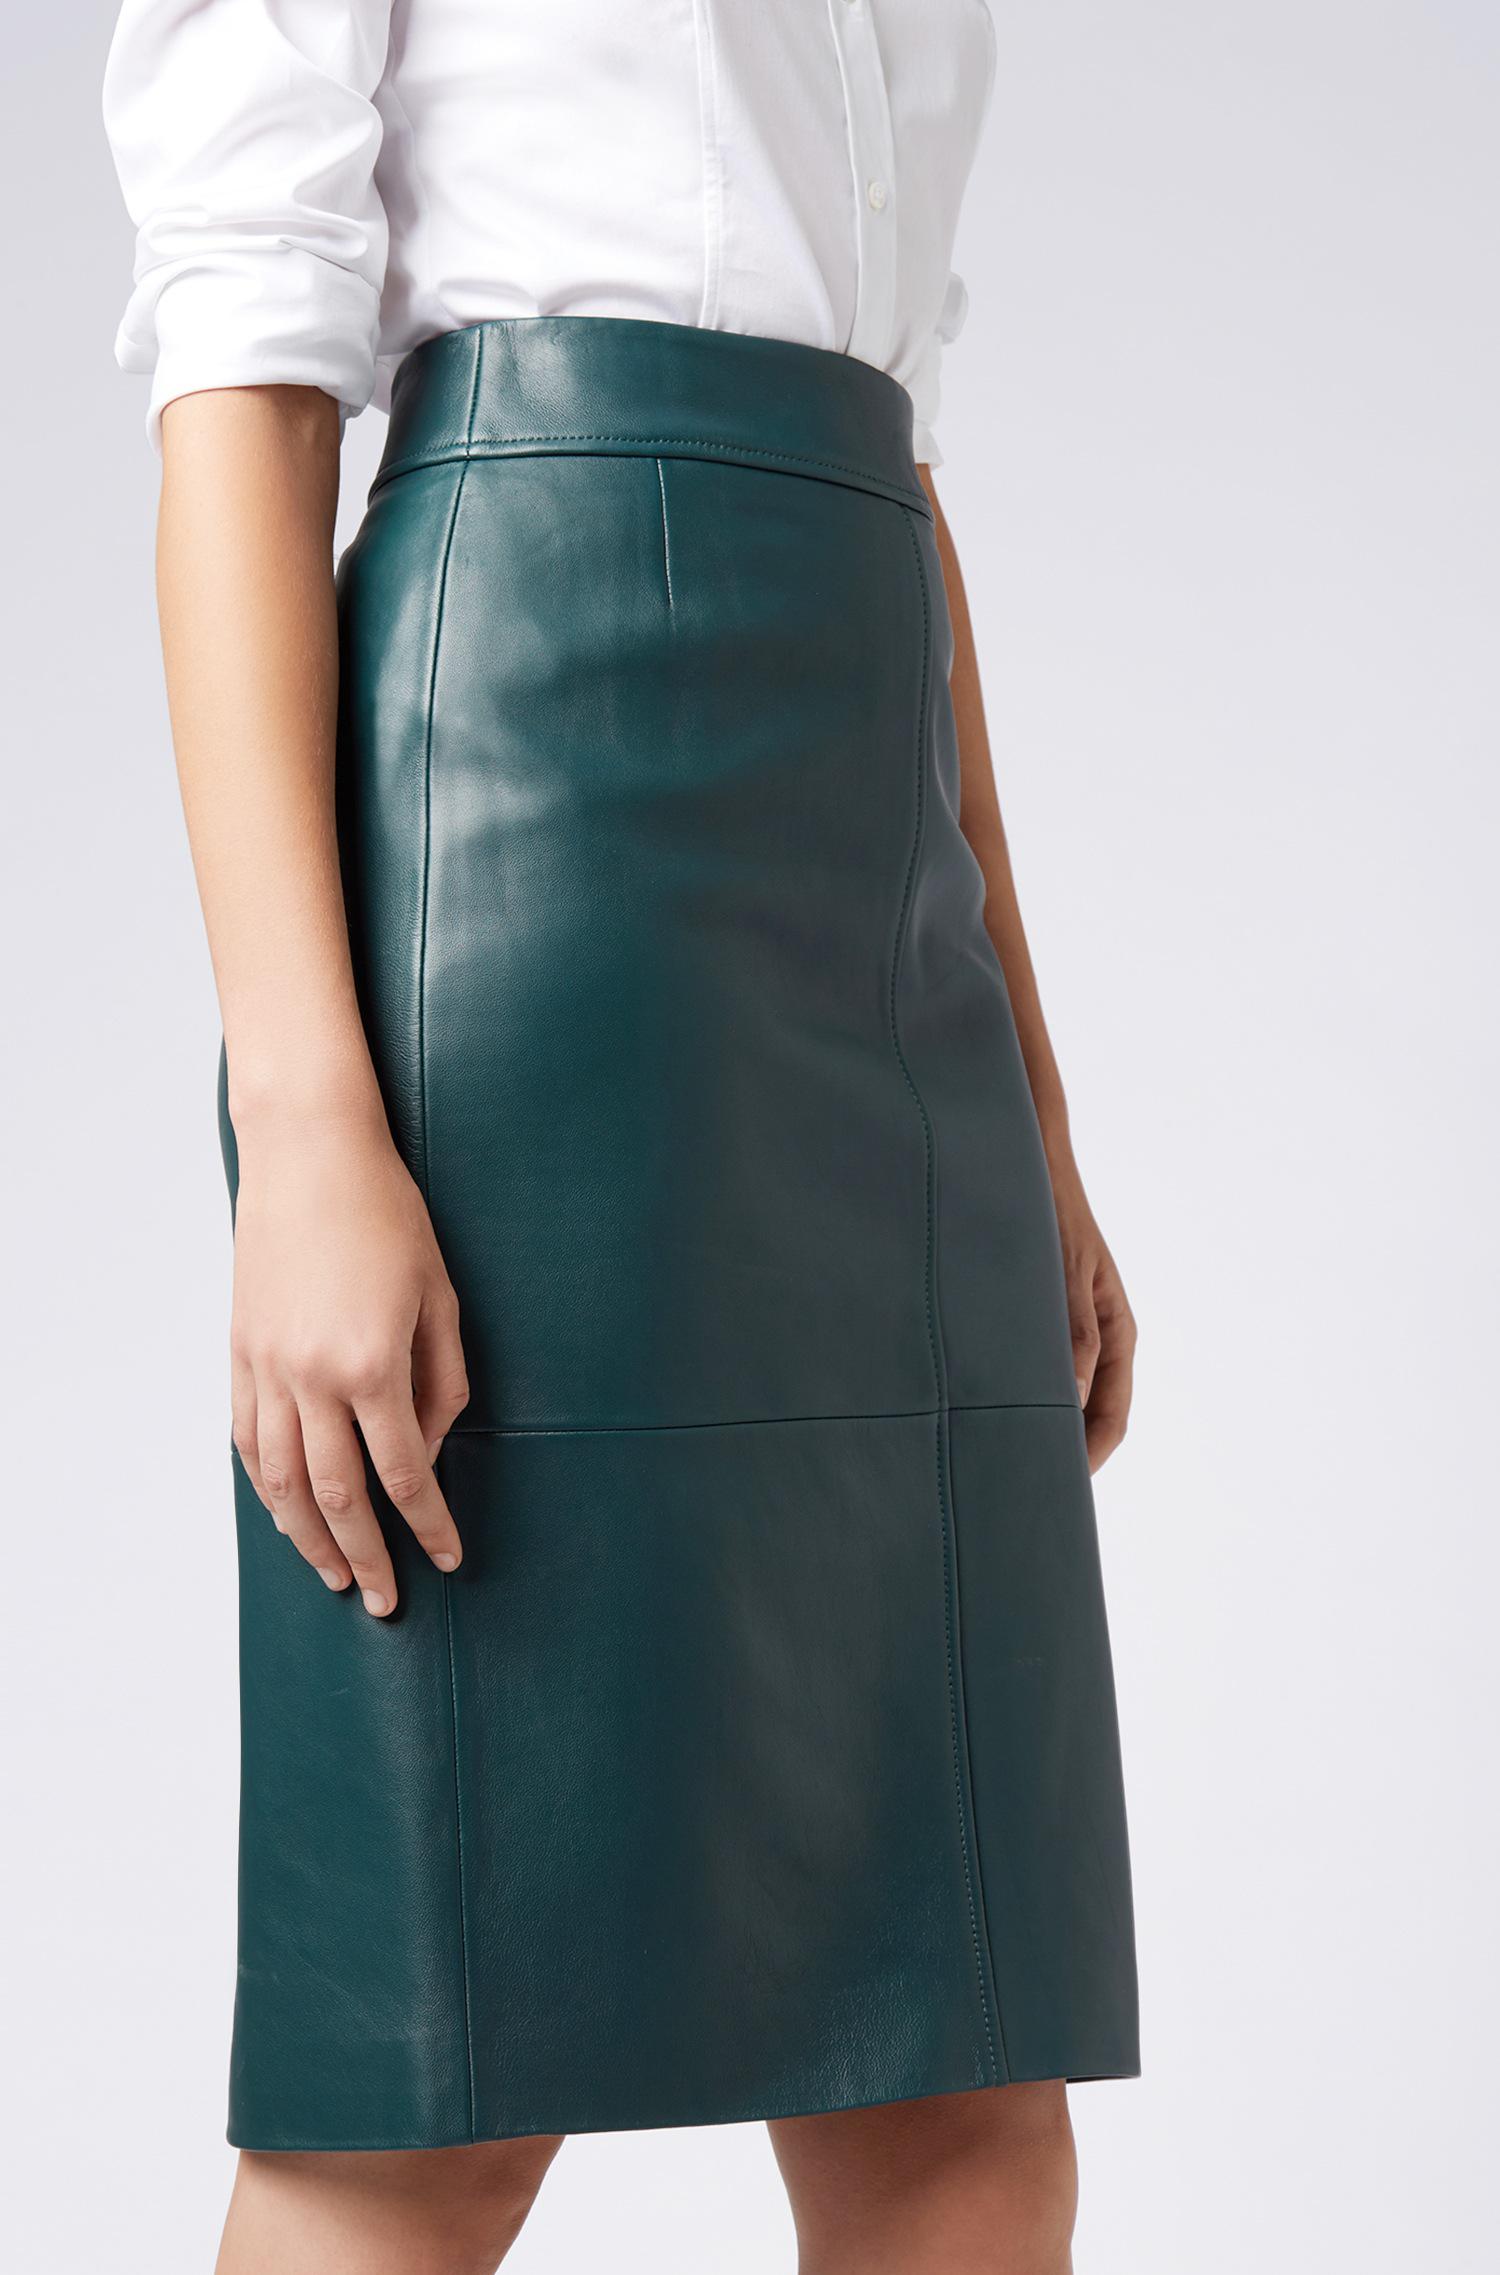 hugo boss green leather skirt